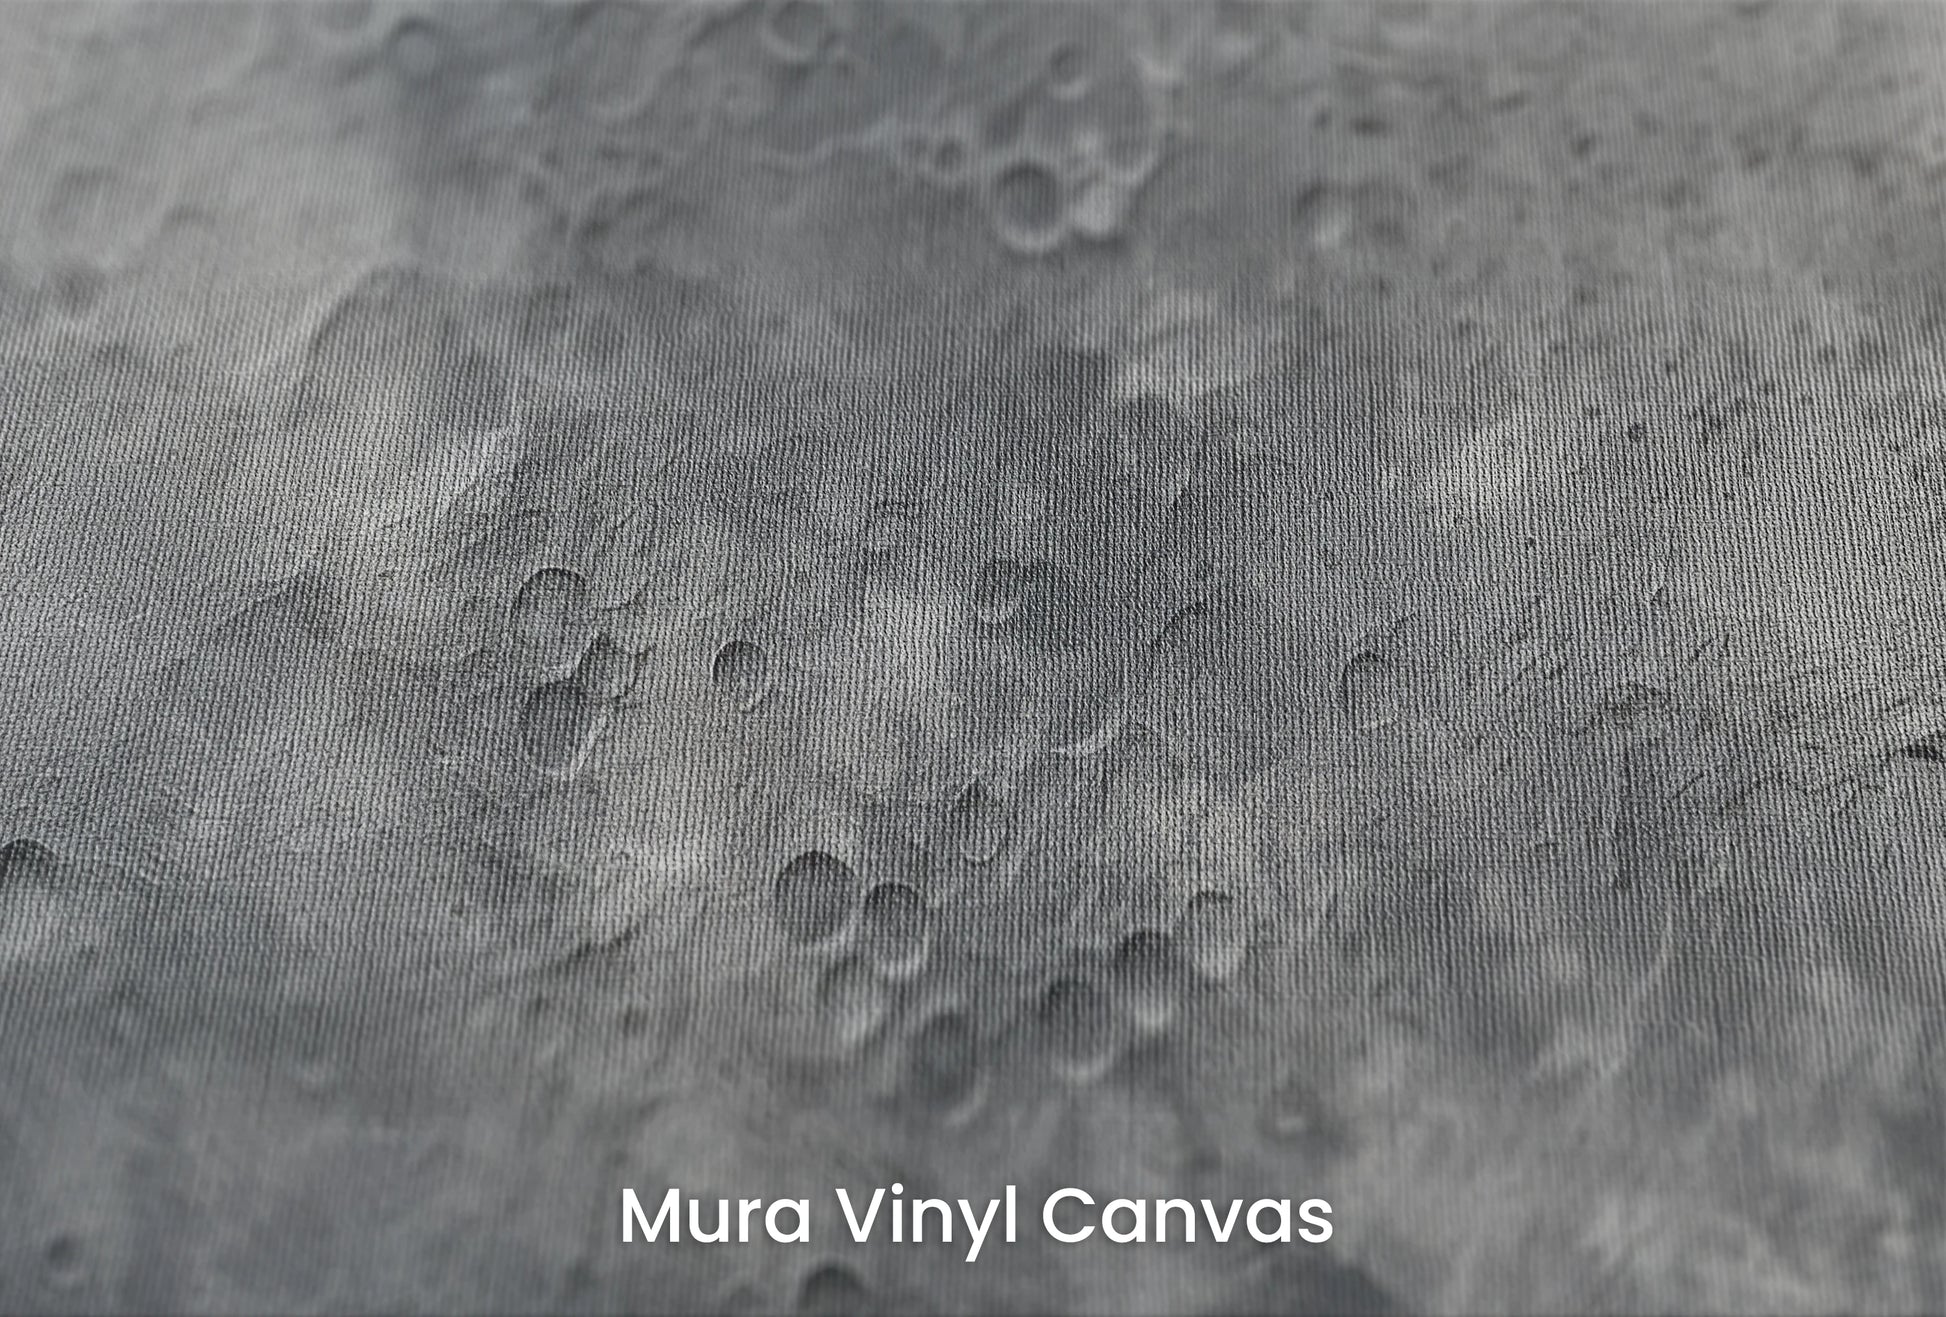 Zbliżenie na artystyczną fototapetę o nazwie Moon's Geography na podłożu Mura Vinyl Canvas - faktura naturalnego płótna.